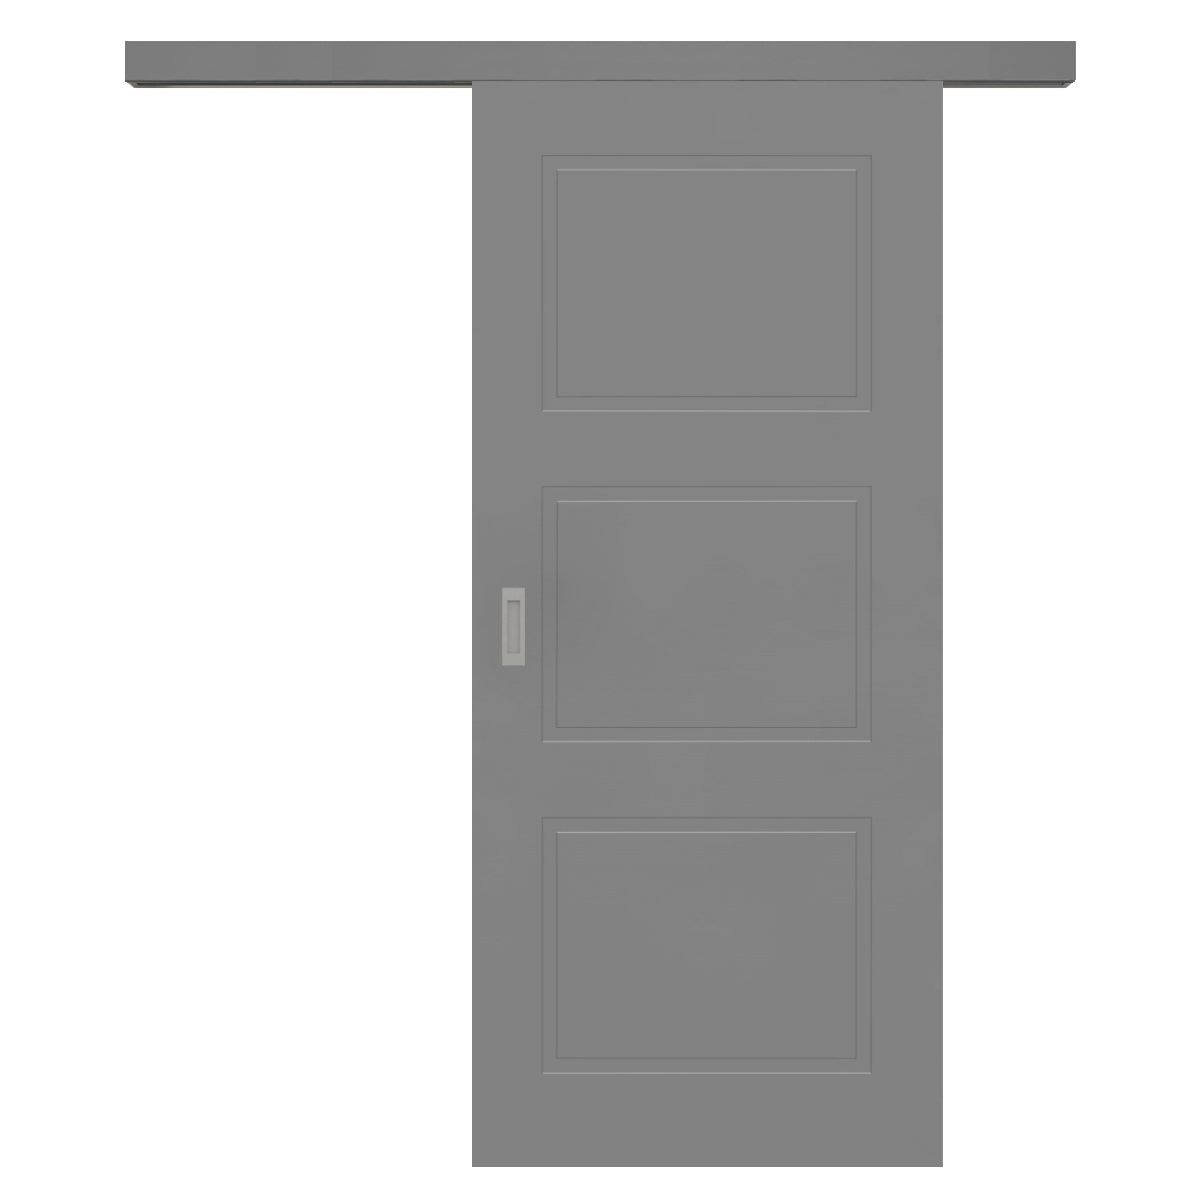 Schiebetür für Set mit grauem Laufkasten grau 3 Kassetten - Modell Stiltür M37